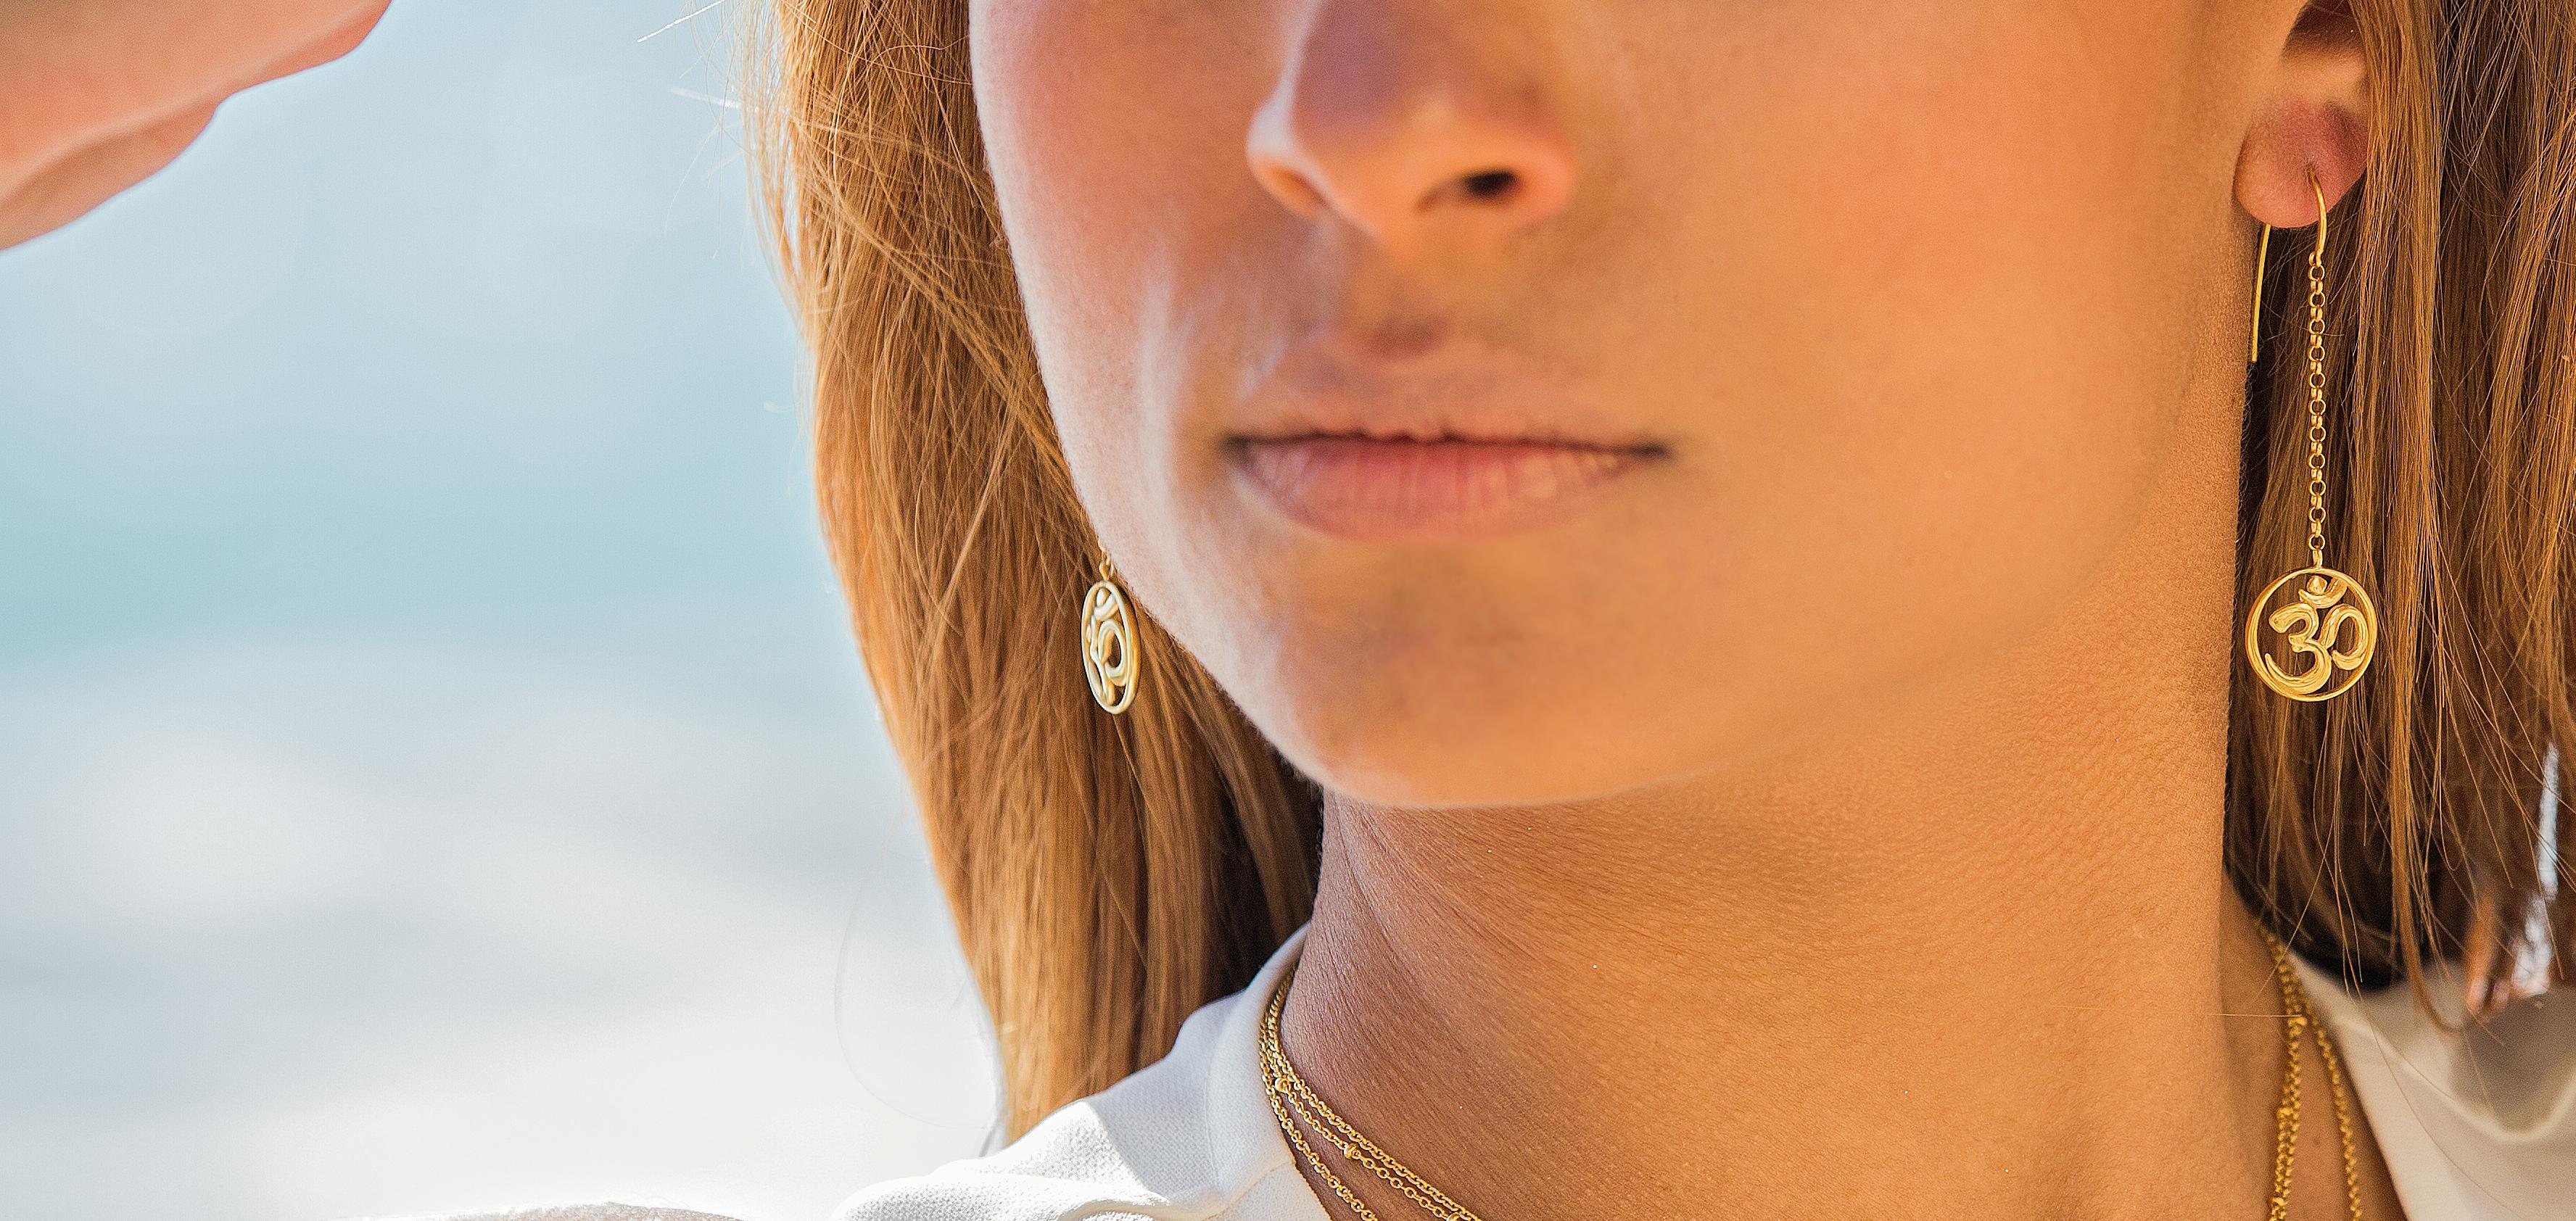 Einzigartiges, langes Paar Ohrringe mit dem Yoga-Symbol OM, handgefertigt in 14Kt Gold. 
Om ist der Klang des Universums und eines der wichtigsten spirituellen Symbole. Das Om symbolisiert die Vergangenheit, die Gegenwart und die Zukunft, aber es